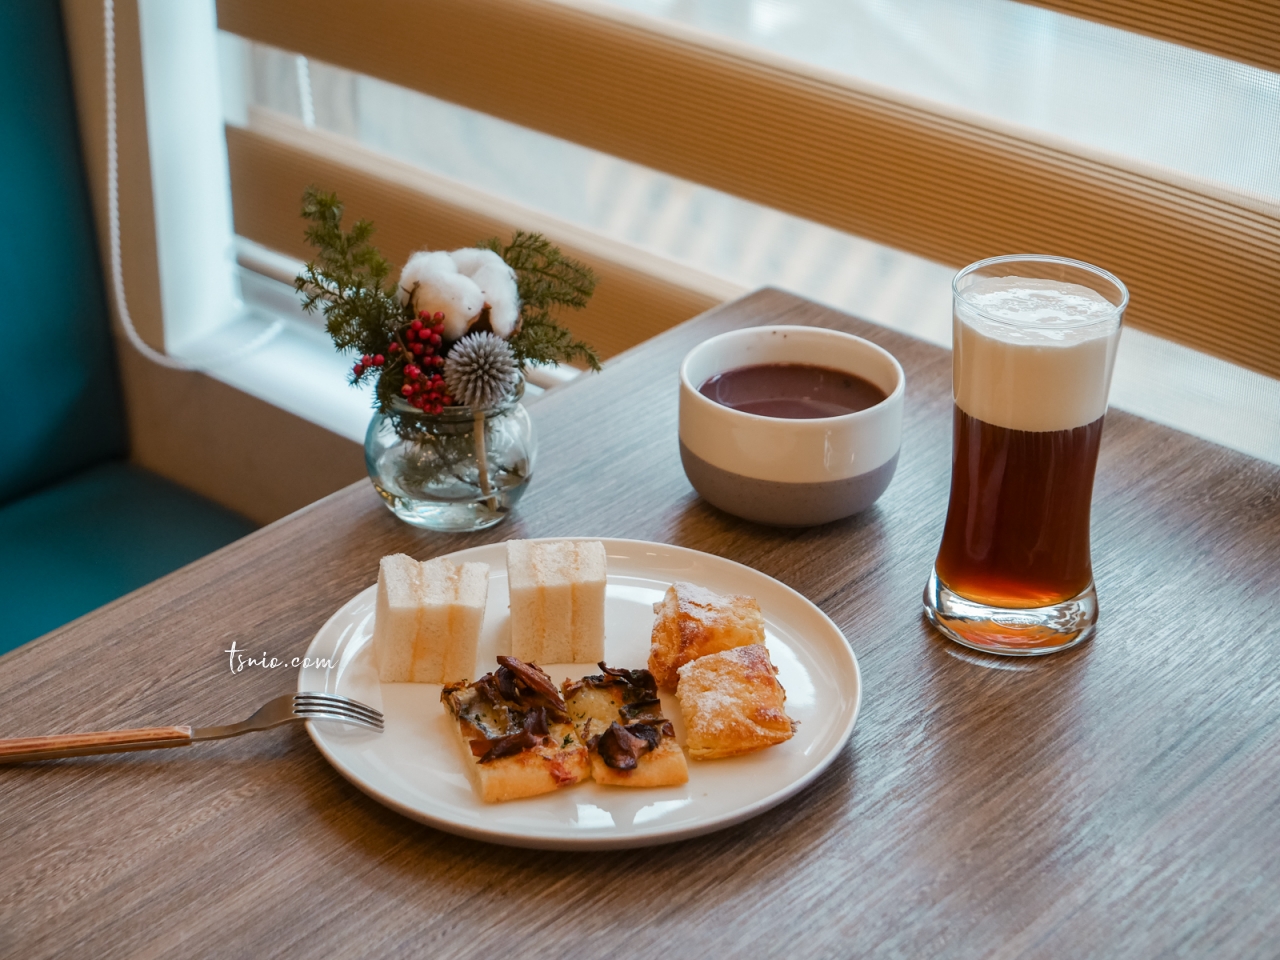 高雄飯店推薦 JOHO HOTEL 高雄火車站質感旅店 免費下午茶調酒暢飲 精緻西式早餐